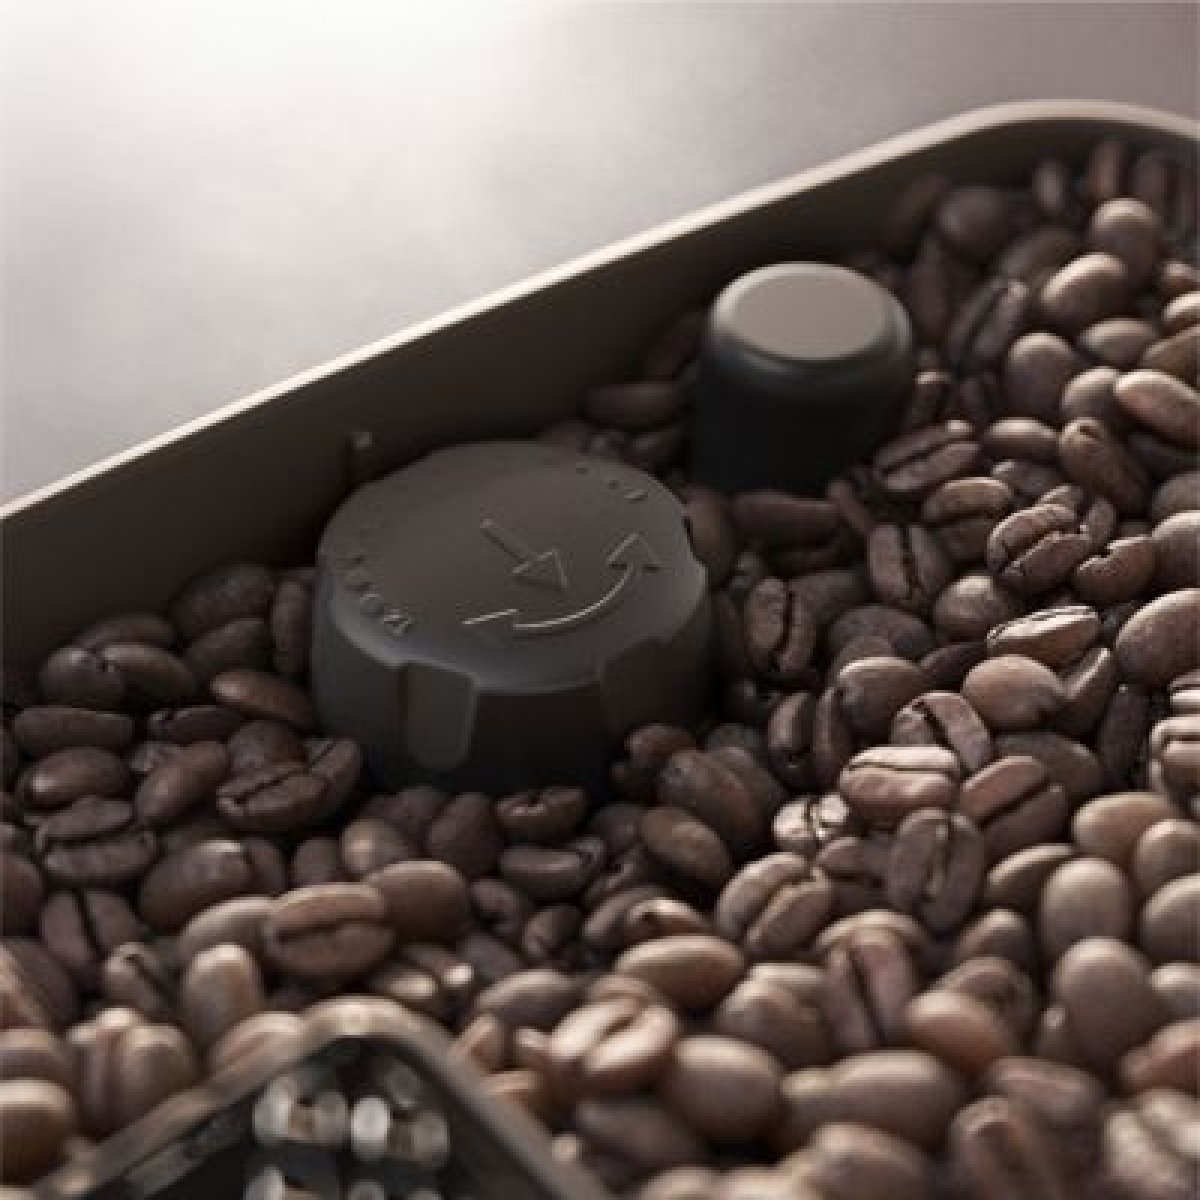 Systém Aróma Extract pre skutočne lahodnú a krásne voňavú kávu